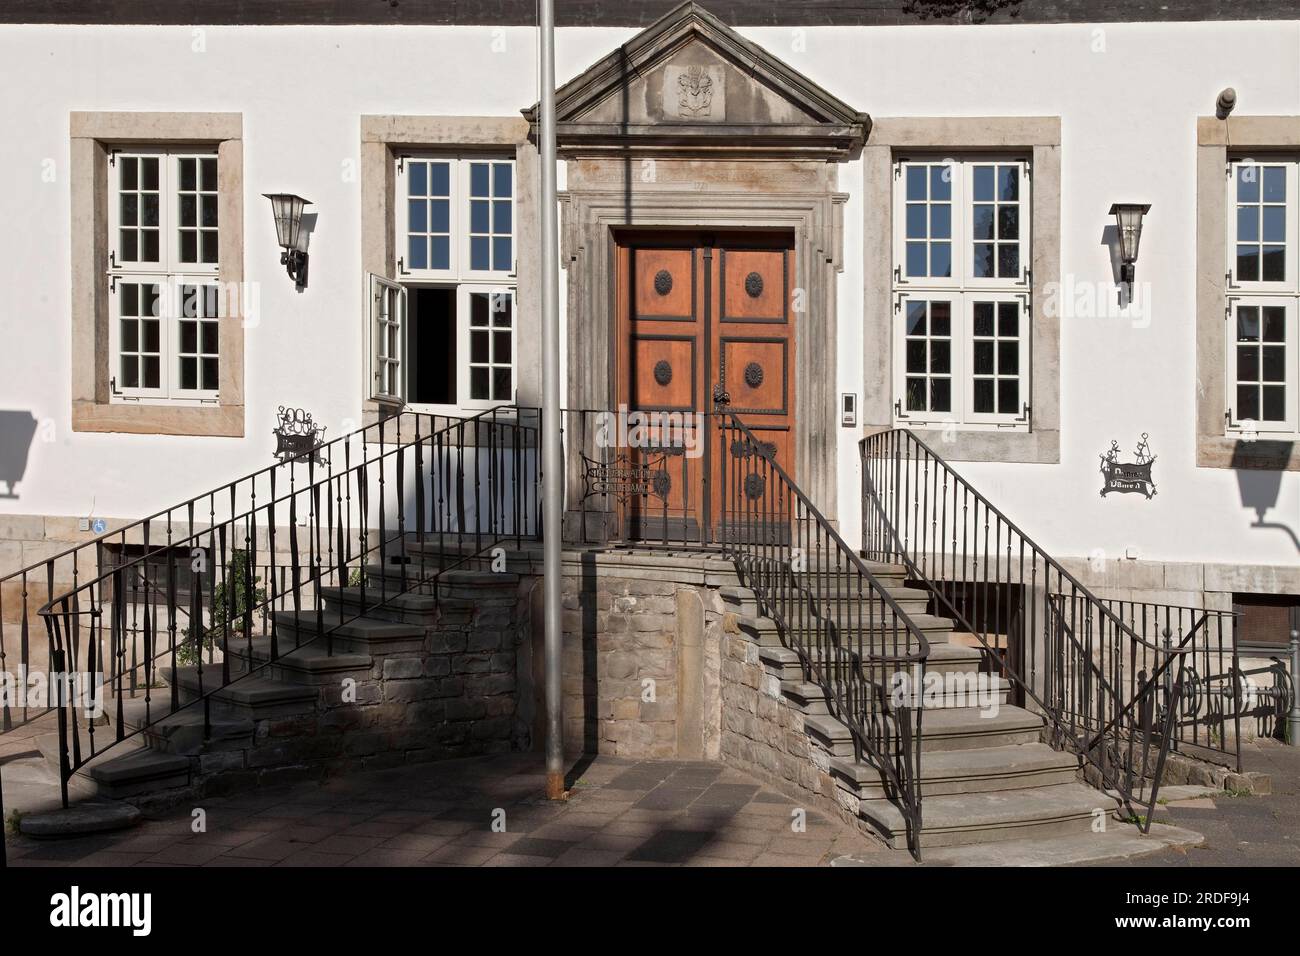 Zona de entrada del ayuntamiento de Bad Muender Alemania Foto de stock